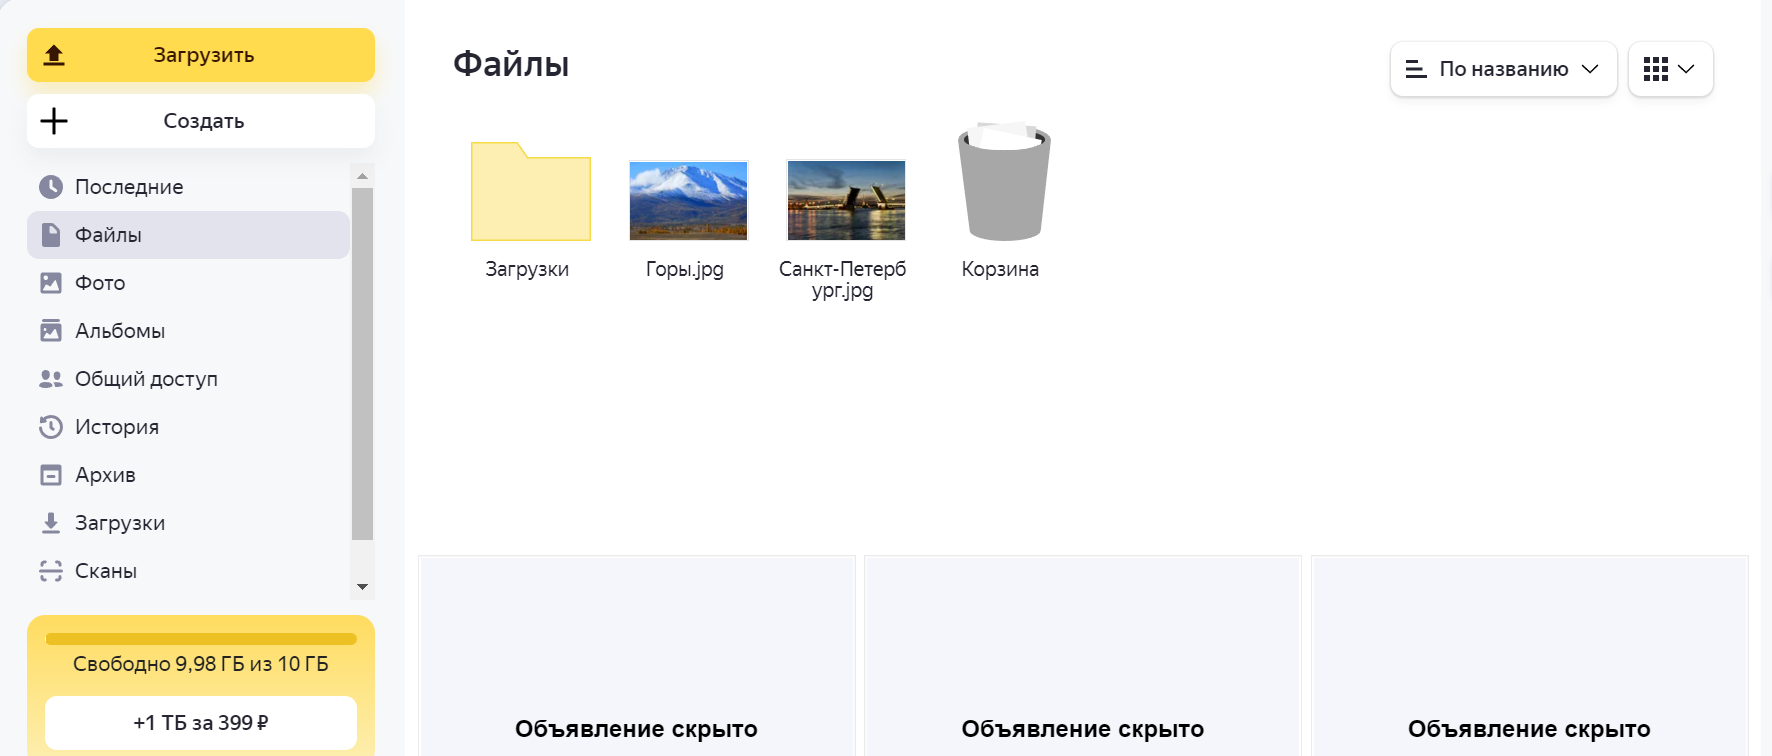 Так выглядит мой Яндекс.Диск